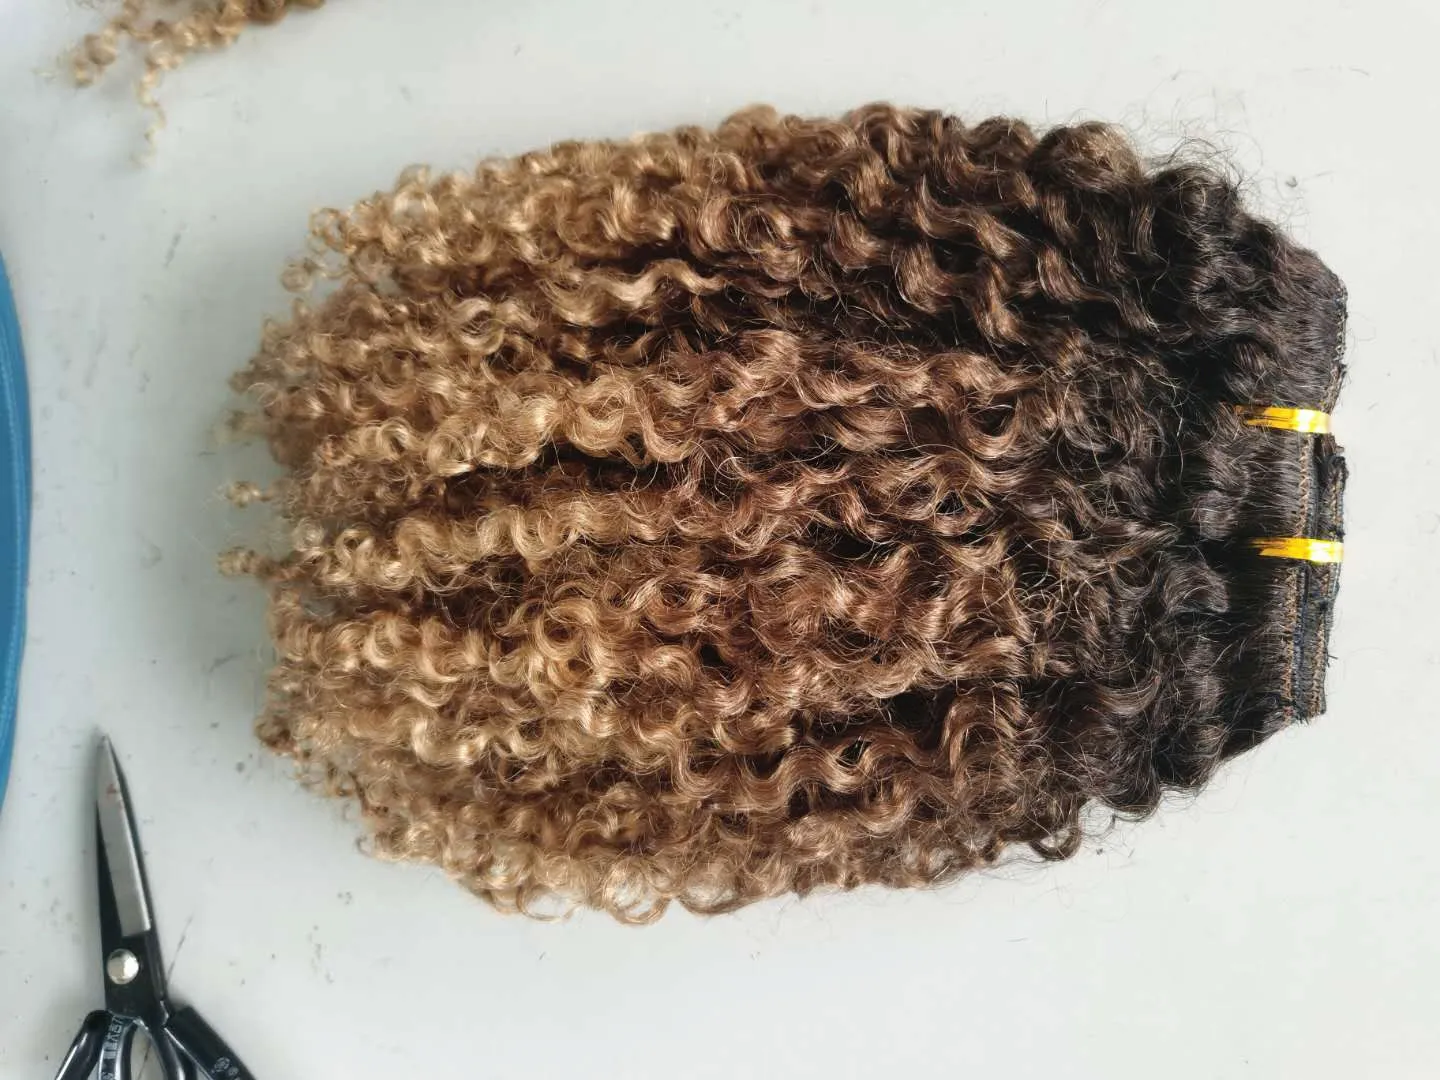 Commerci all'ingrosso Capelli umani brasiliani Vrgin Estensioni dei capelli di Remy Trama di capelli ricci crespi Stile Naturale Nero / Marrone / Biondo Colore Ombre